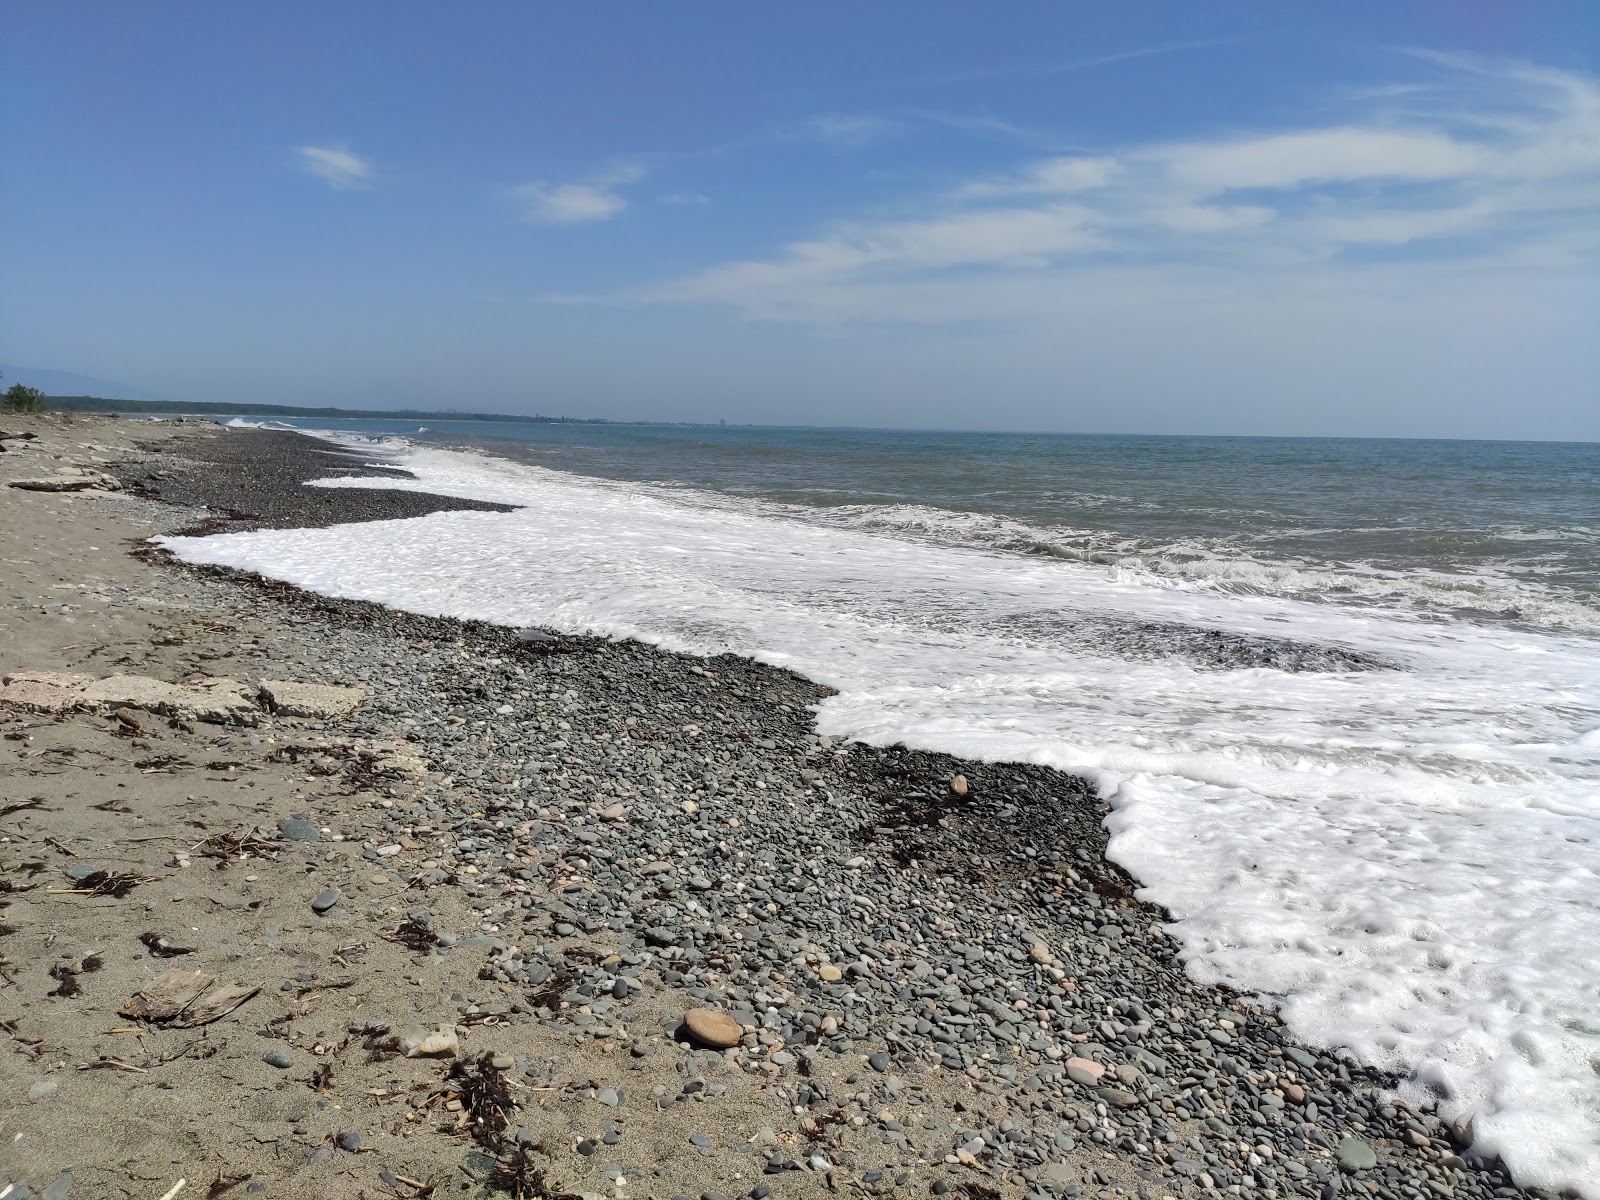 Zdjęcie Dghamishi beach z powierzchnią szary kamyk